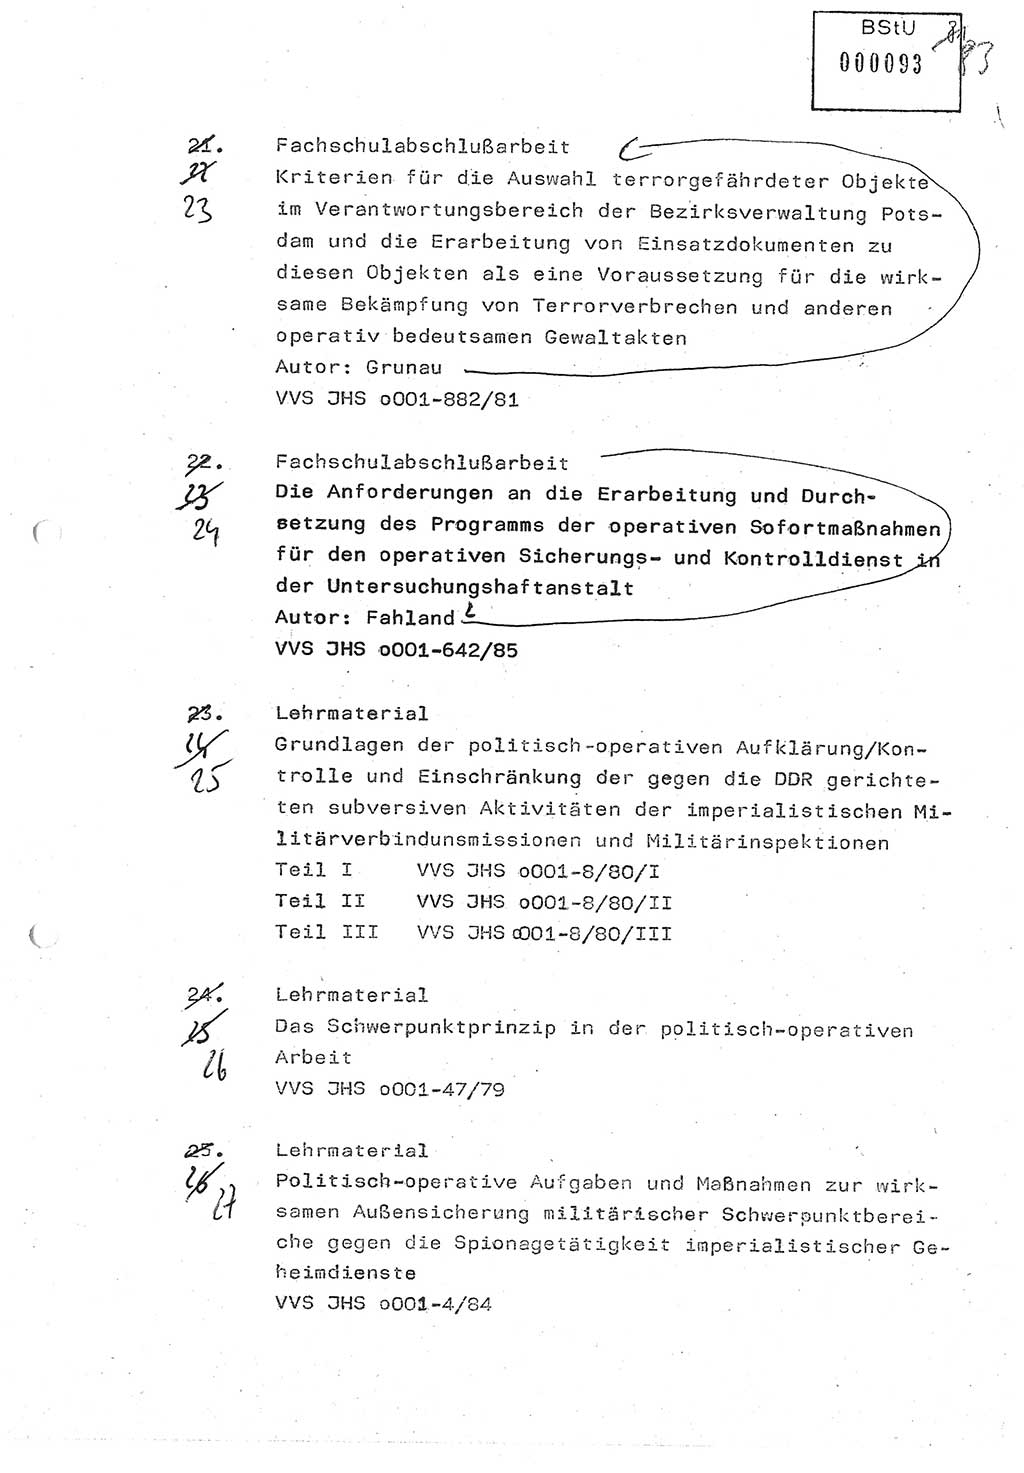 Diplomarbeit (Entwurf) Oberleutnant Peter Parke (Abt. ⅩⅣ), Ministerium für Staatssicherheit (MfS) [Deutsche Demokratische Republik (DDR)], Juristische Hochschule (JHS), Geheime Verschlußsache (GVS) o001-98/86, Potsdam 1986, Seite 93 (Dipl.-Arb. MfS DDR JHS GVS o001-98/86 1986, S. 93)